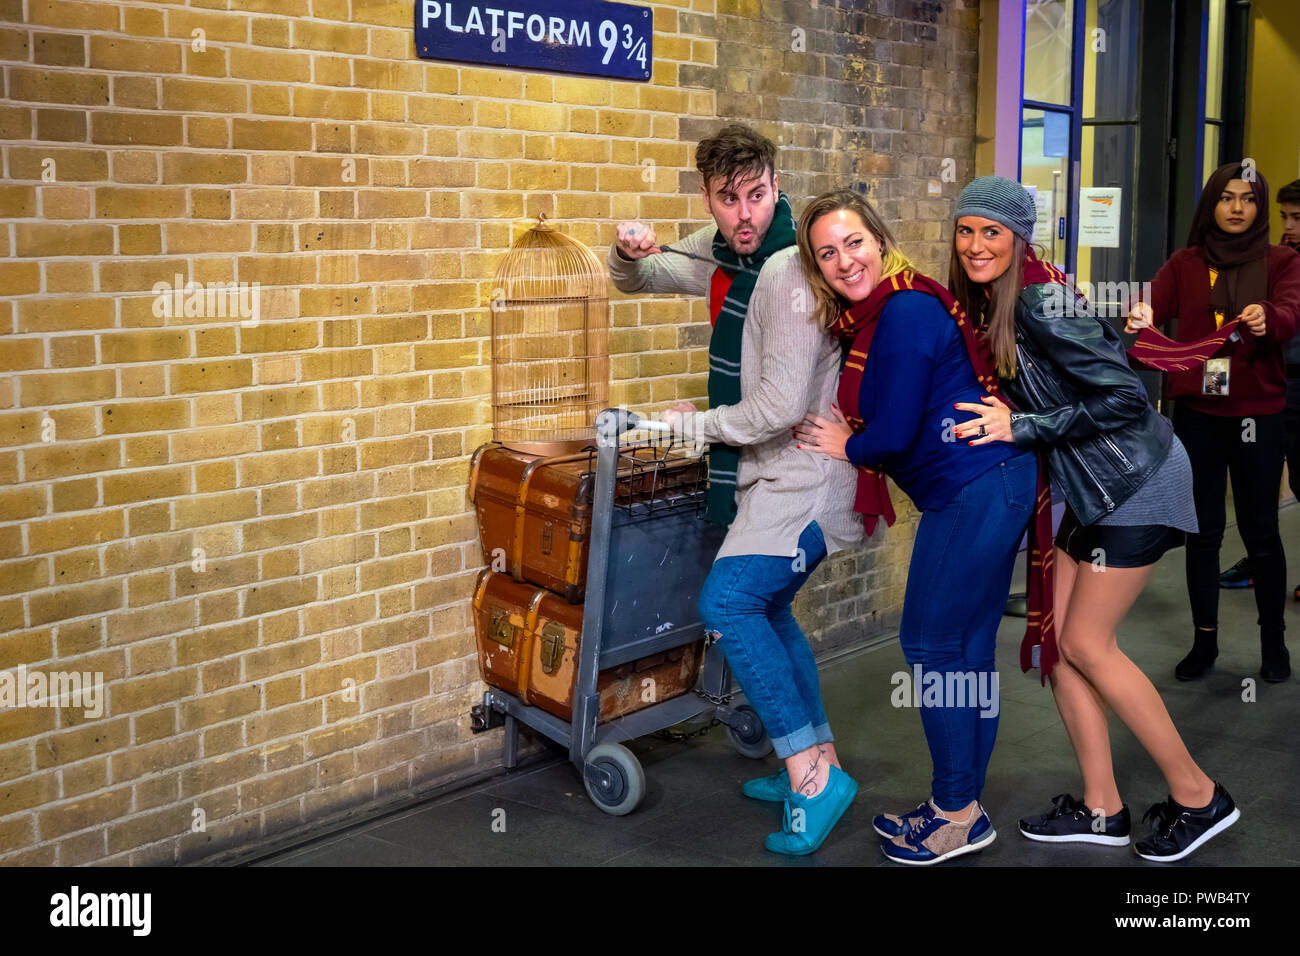 Londres, Royaume-Uni - 12 mai 2018 : des personnes non identifiées, pose à la plate-forme 9 3/4 par la prise de film Harry Potter à King's Cross station Banque D'Images